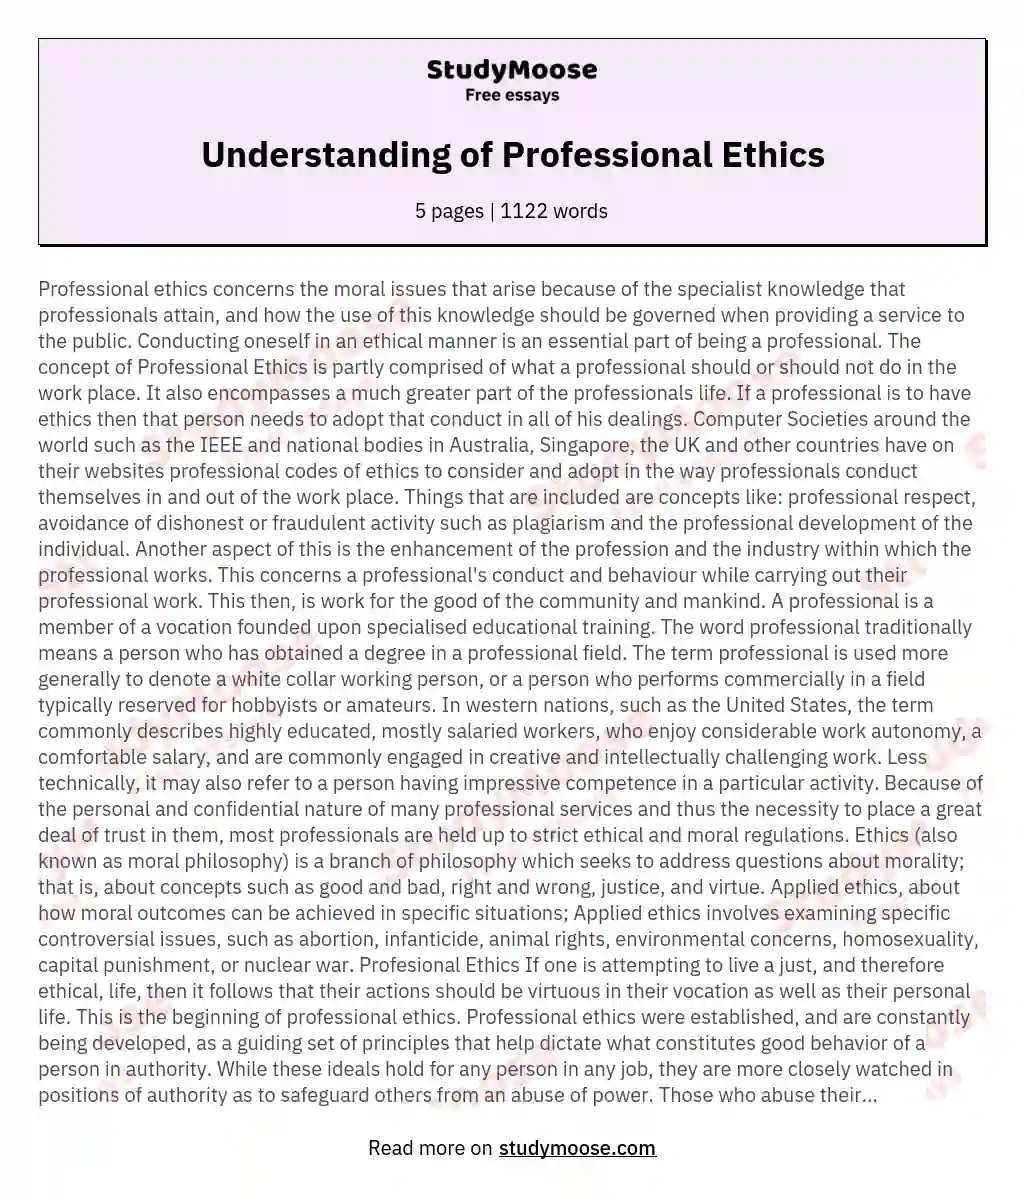 Understanding of Professional Ethics essay